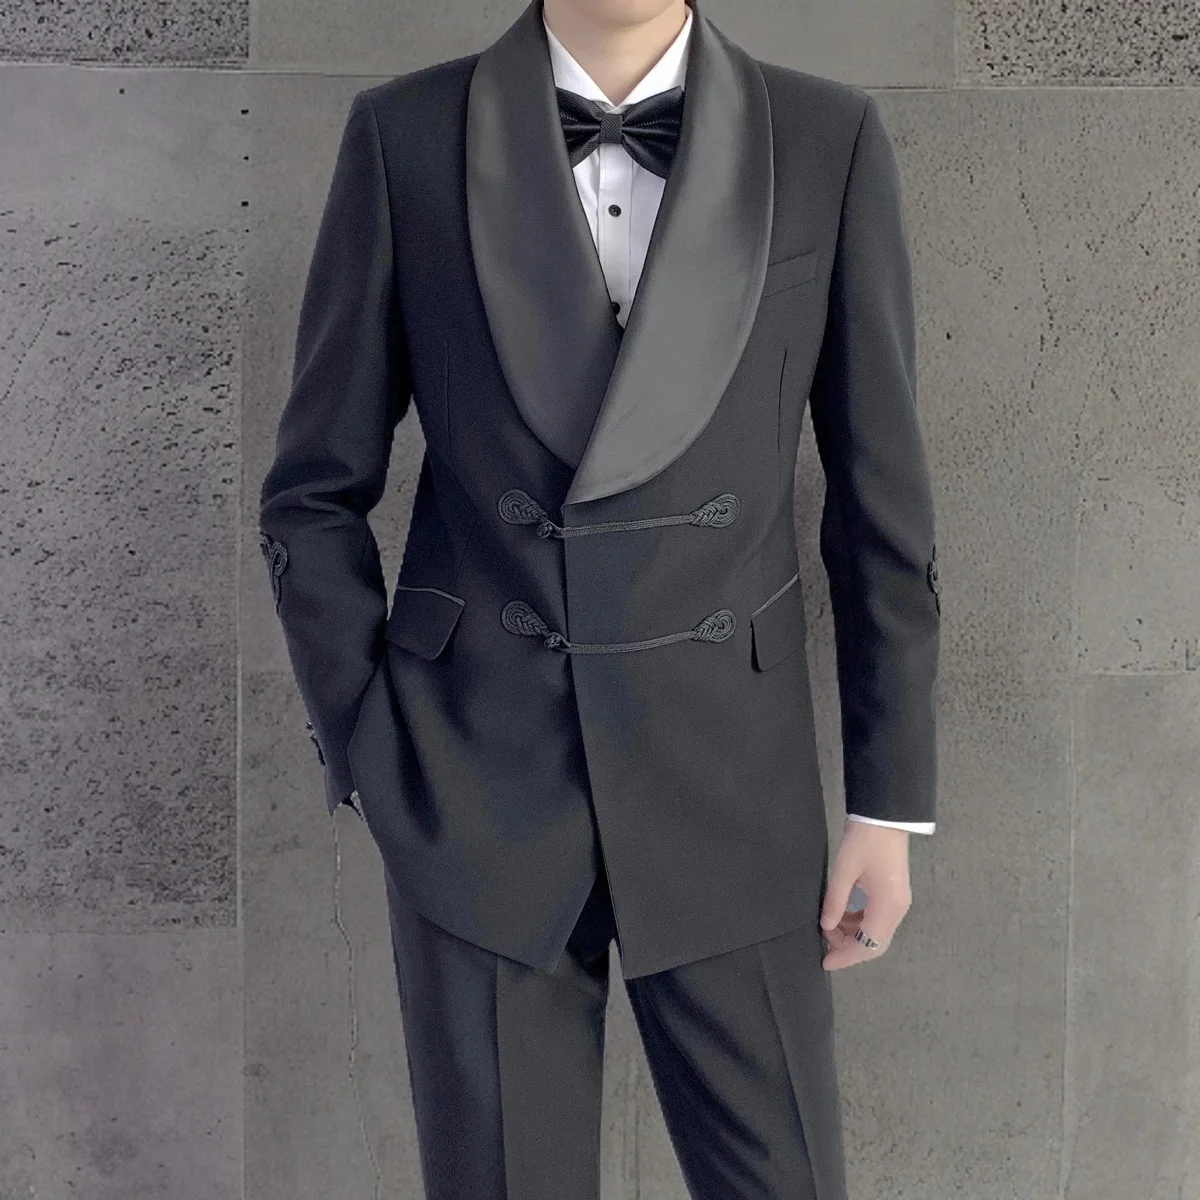 Specialiai pasiūtas juodas dvigubas jaunikis vyriškas kostiumas su skara atlapu ir kiniškomis sagomis oficialioms vestuvėms (švarkas + kelnės) Nuotrauka 3